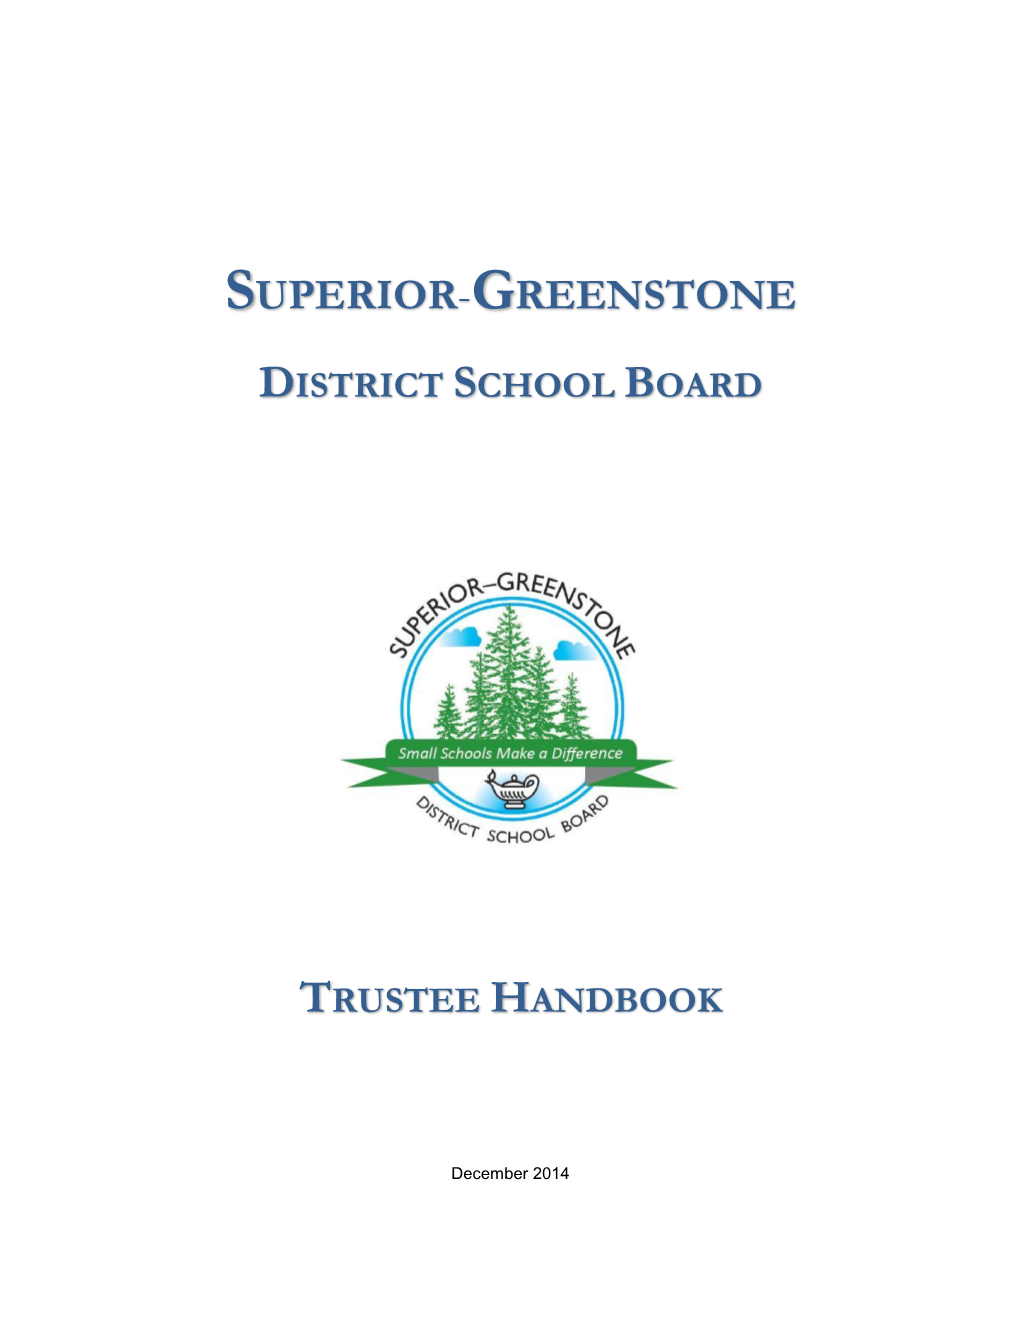 Superior-Greenstone